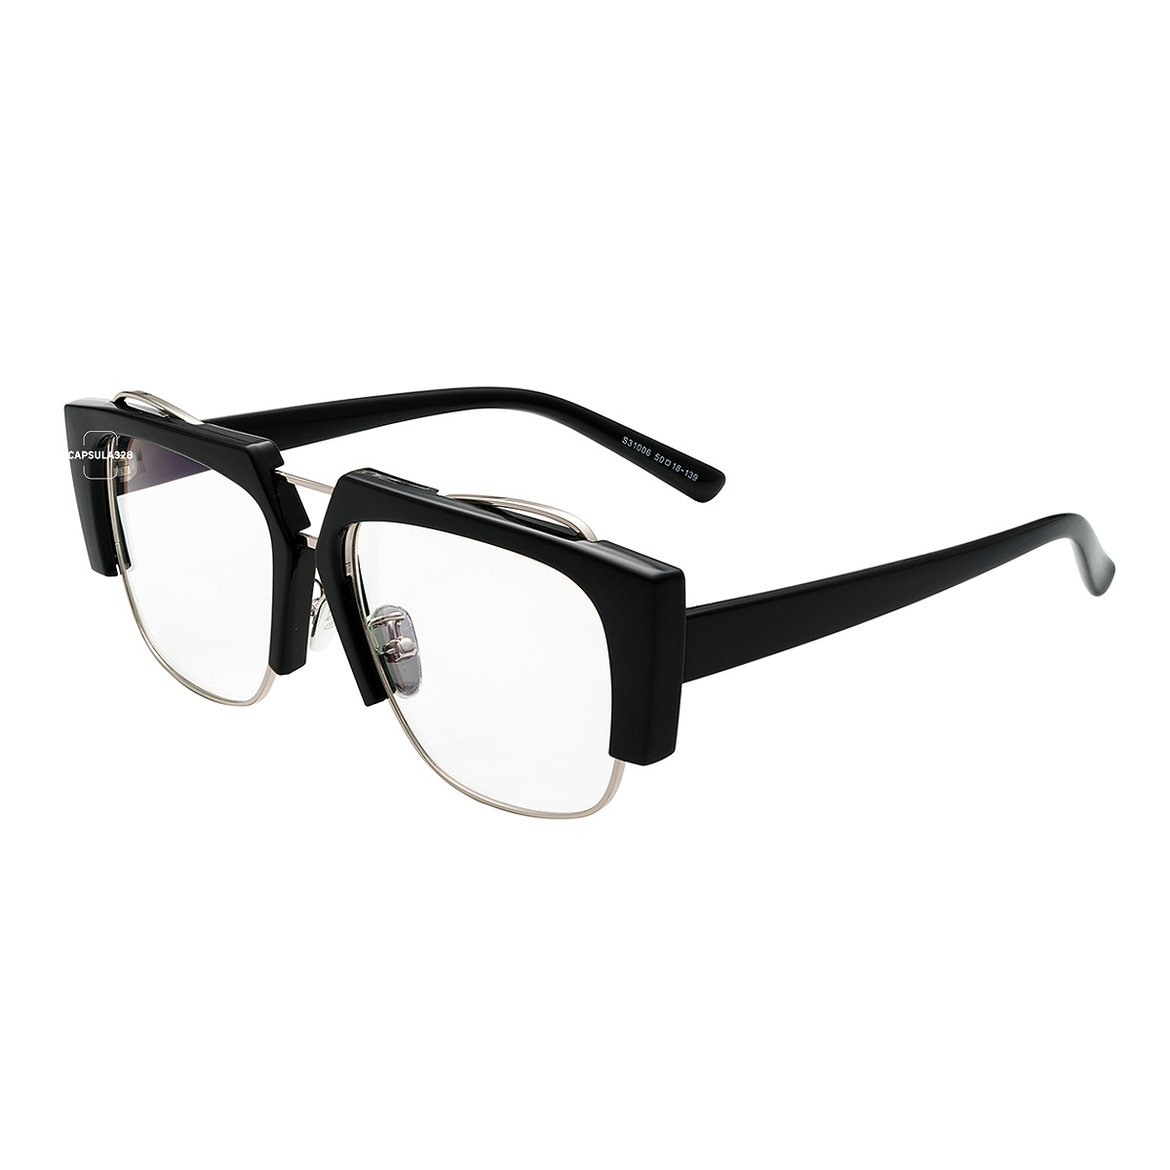 Имиджевые очки Bevel 4604